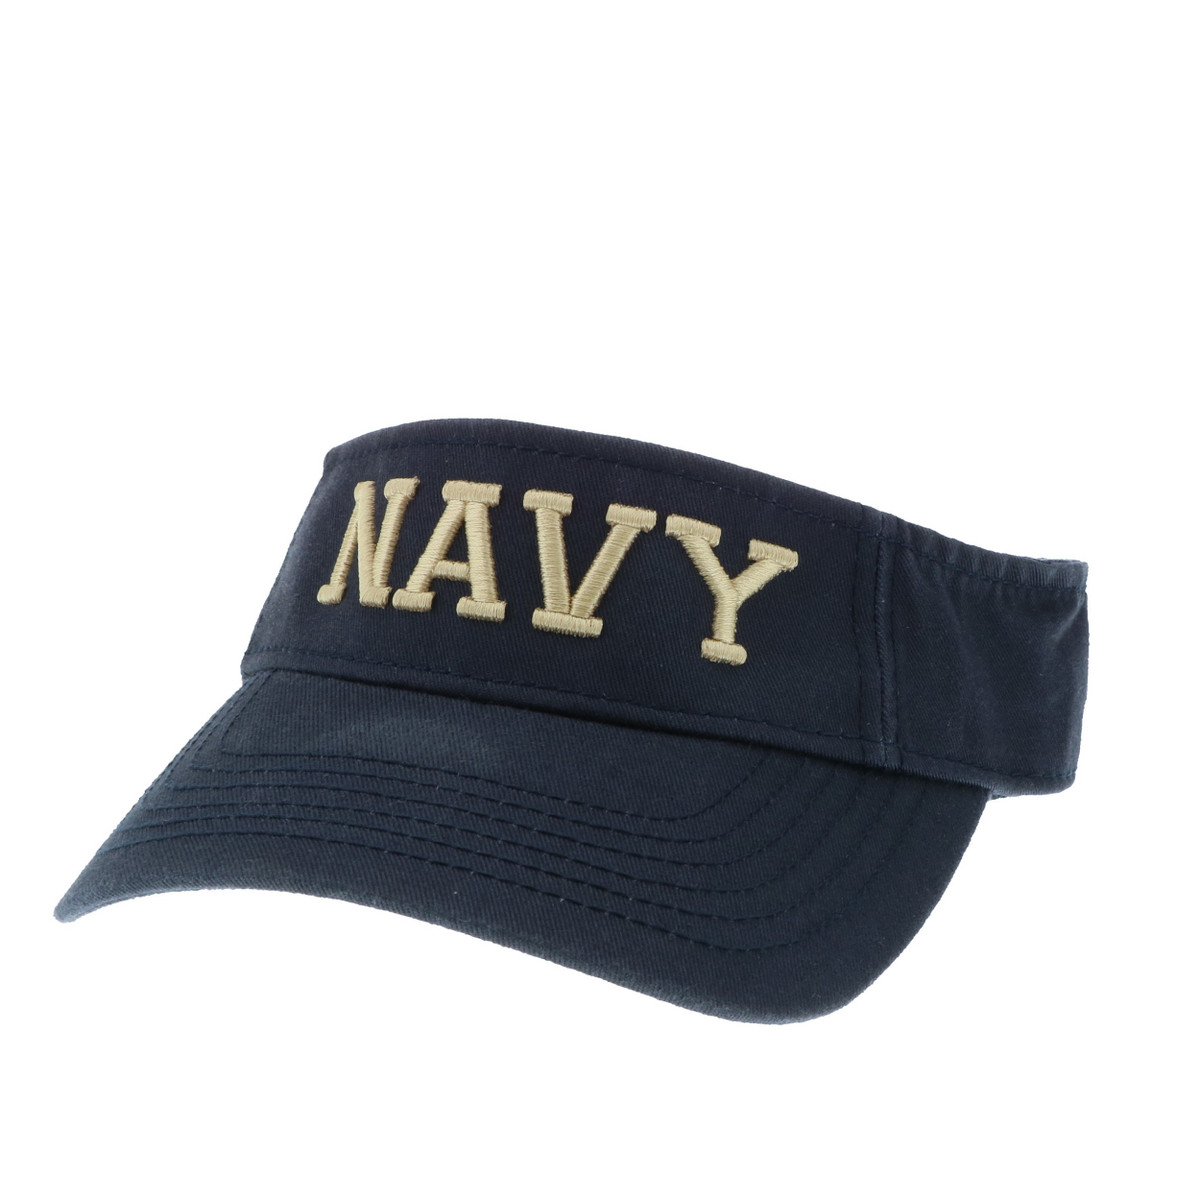 Navy Visor